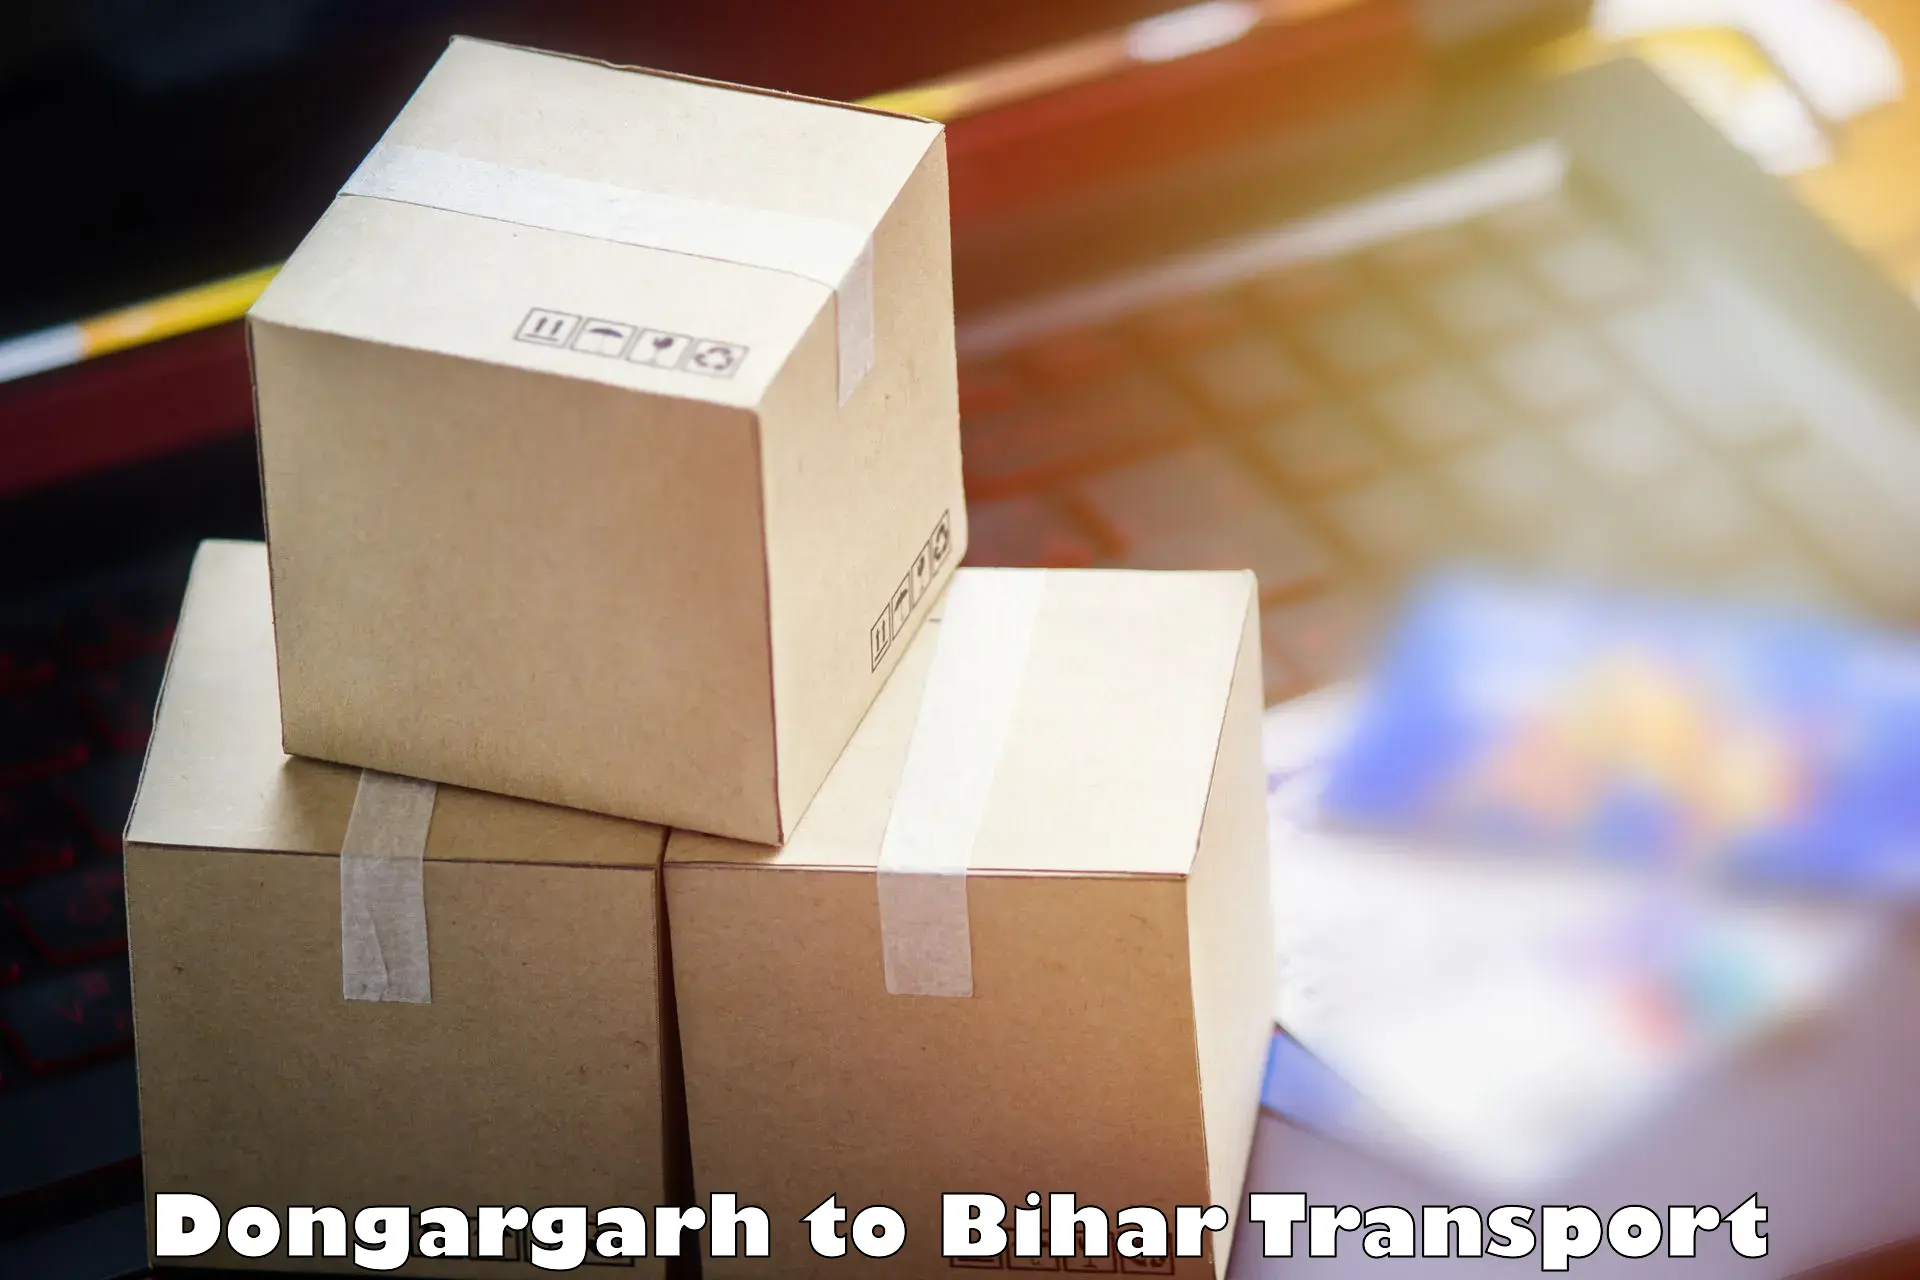 Shipping partner Dongargarh to Baniapur